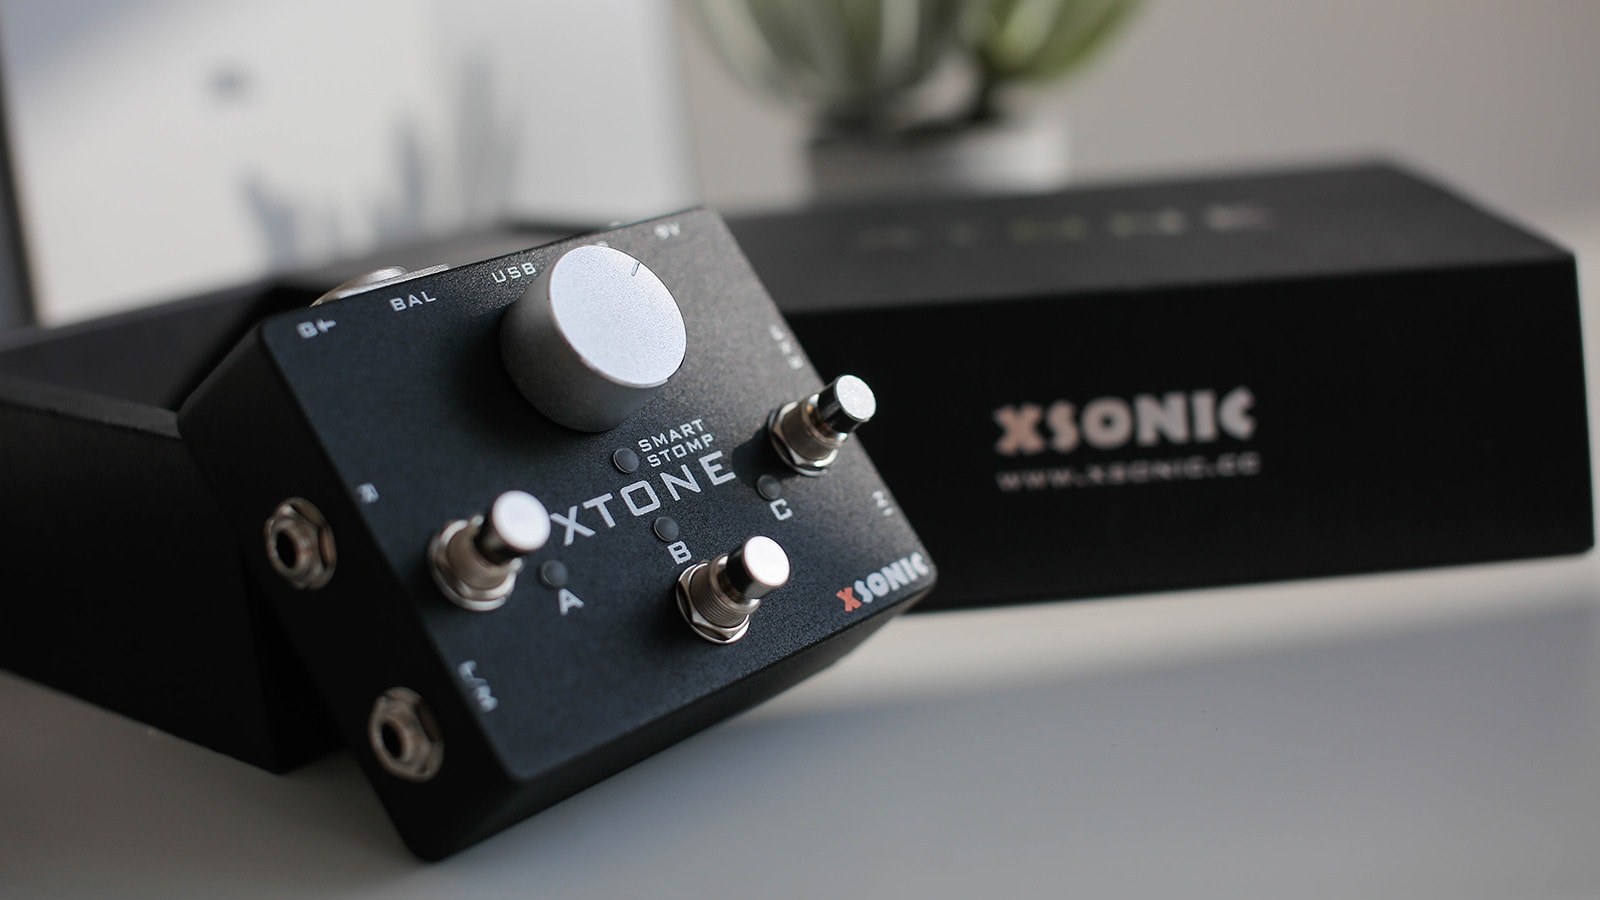 XTONE - XSONIC | Hookup, Inc.